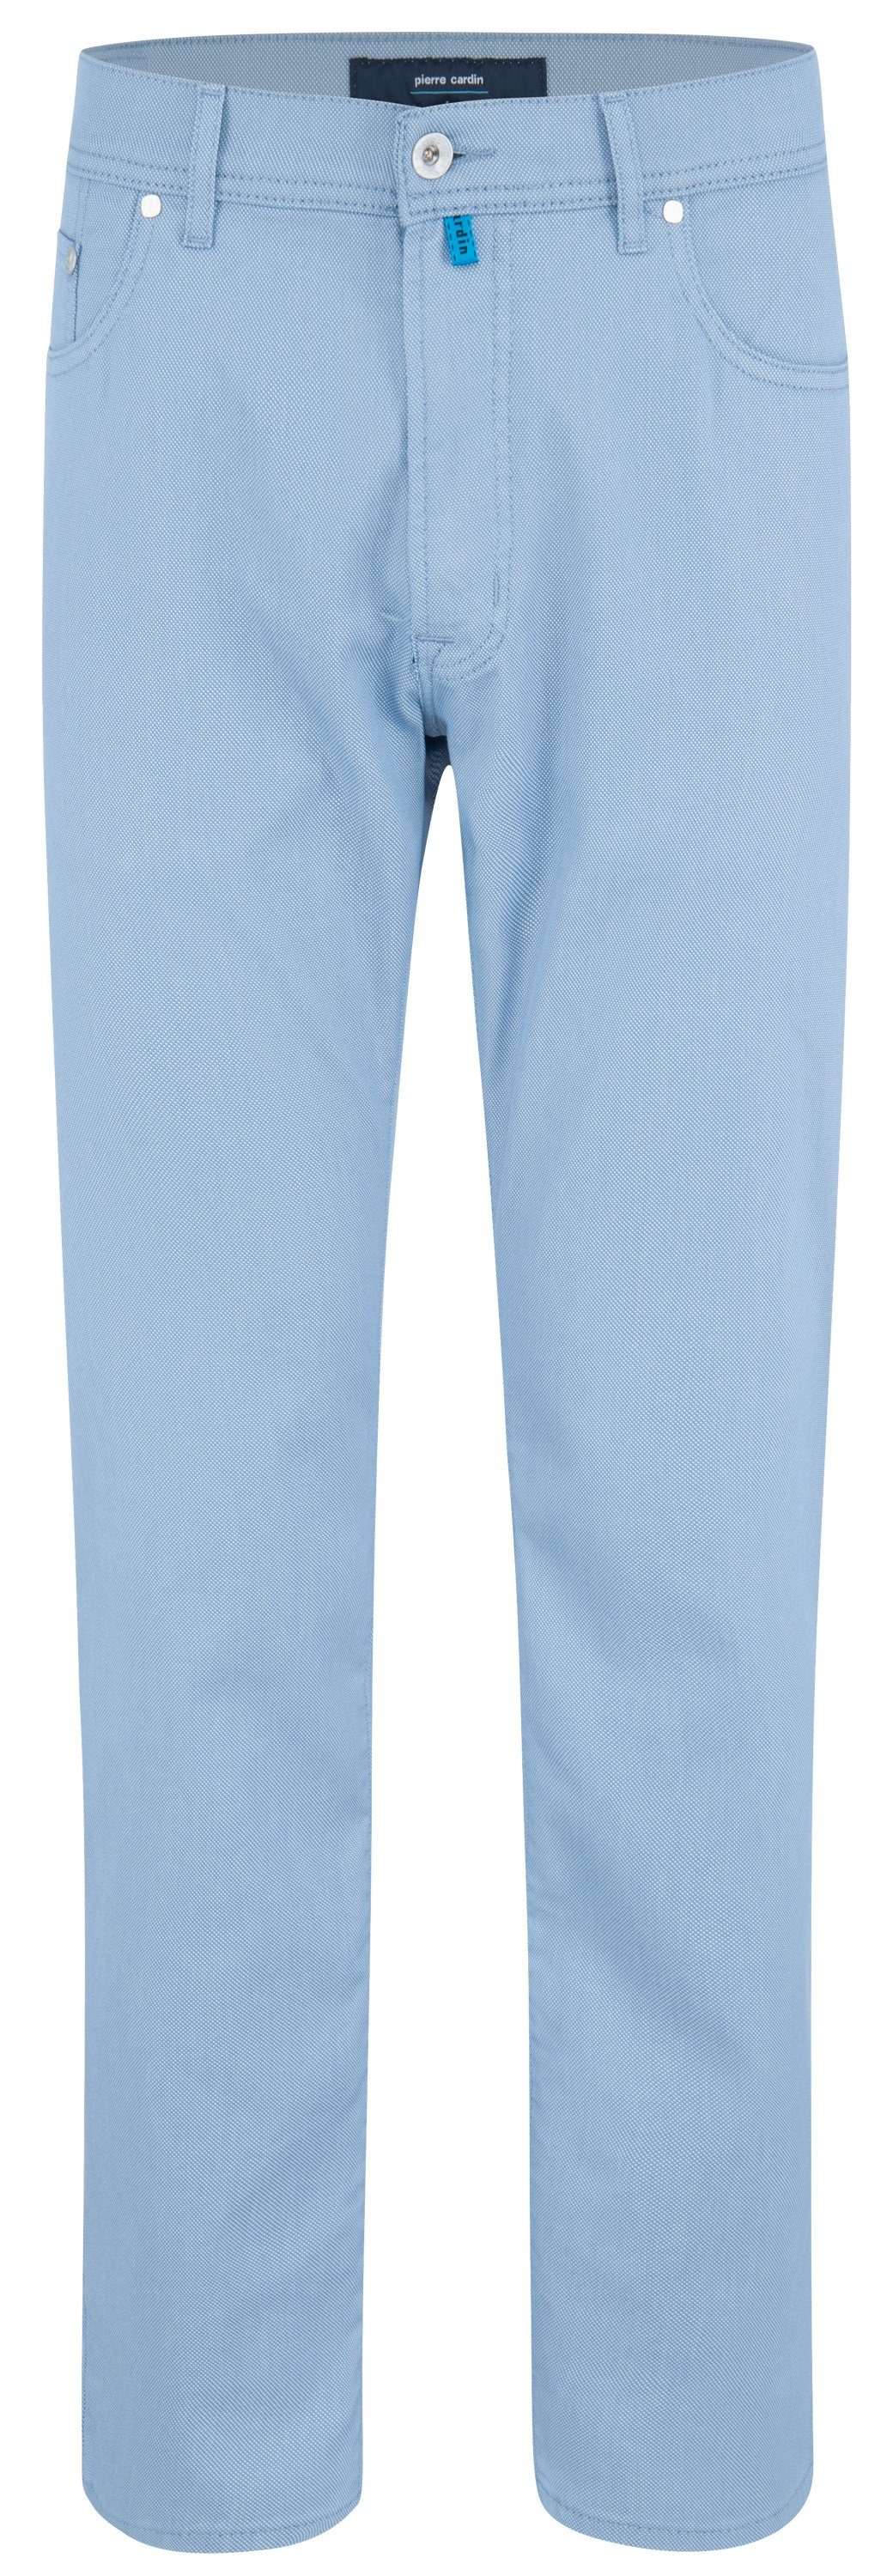 Pierre Cardin 5-Pocket-Jeans PIERRE CARDIN LYON lightblue stonewash 30940 1017.6216